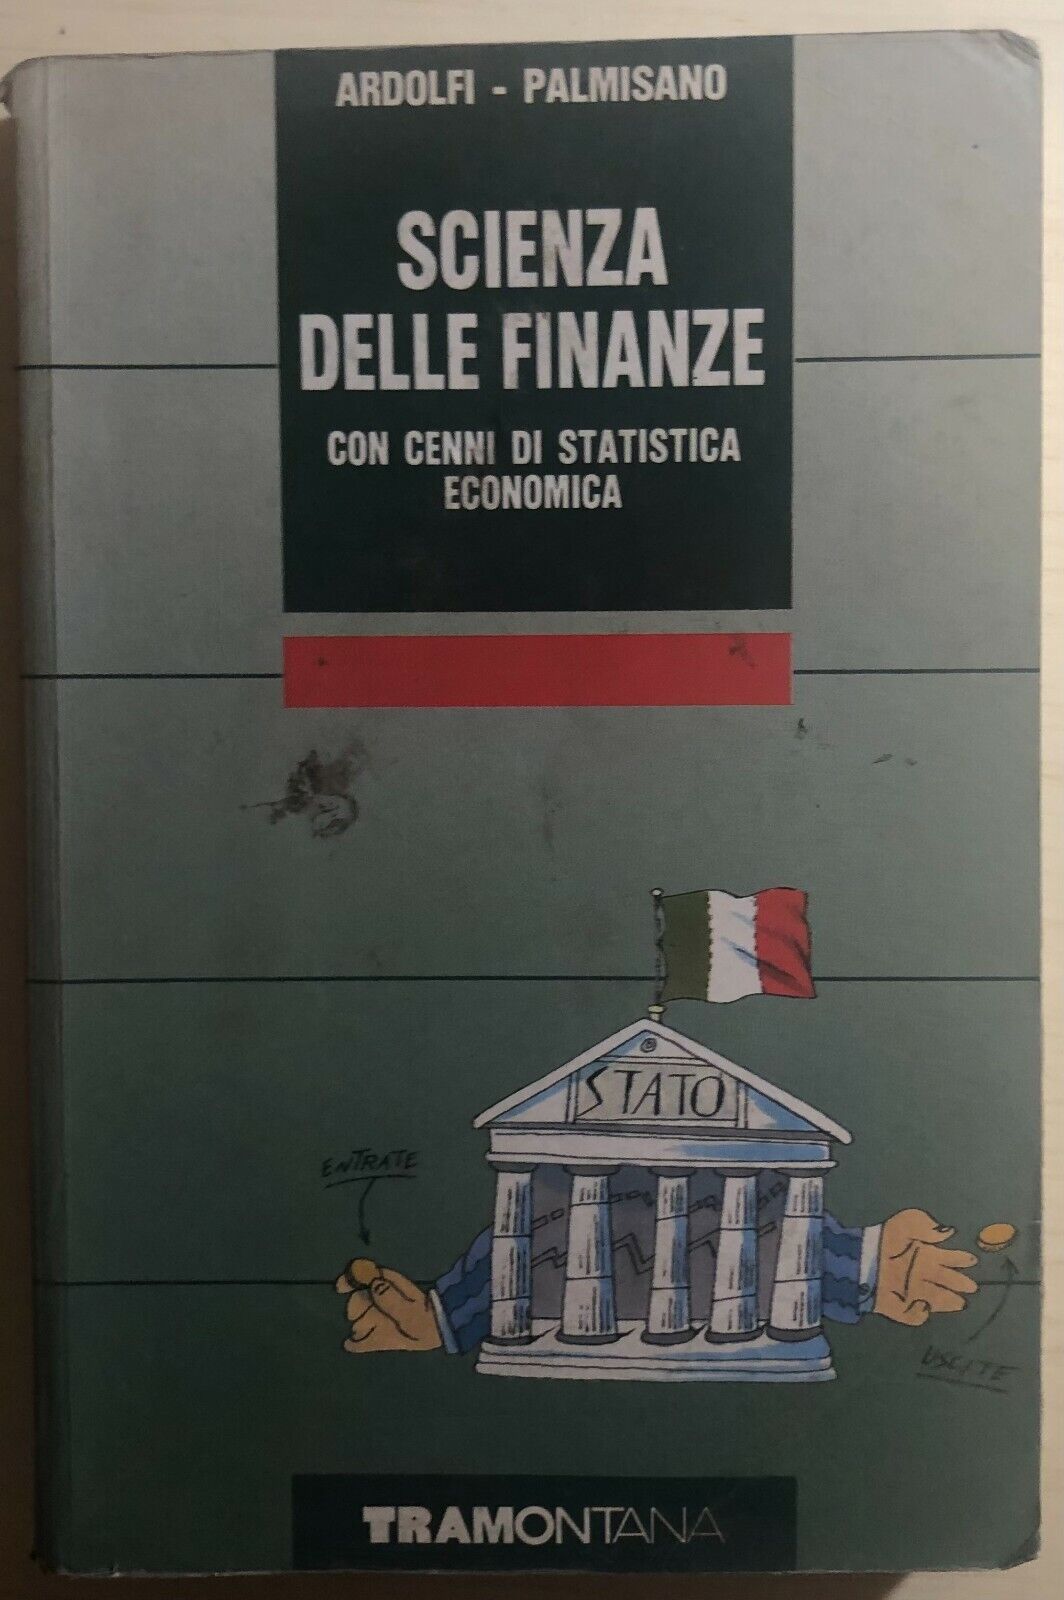 Scienza delle finanze di Ardolfi-palmisano,  1991,  Tramontana